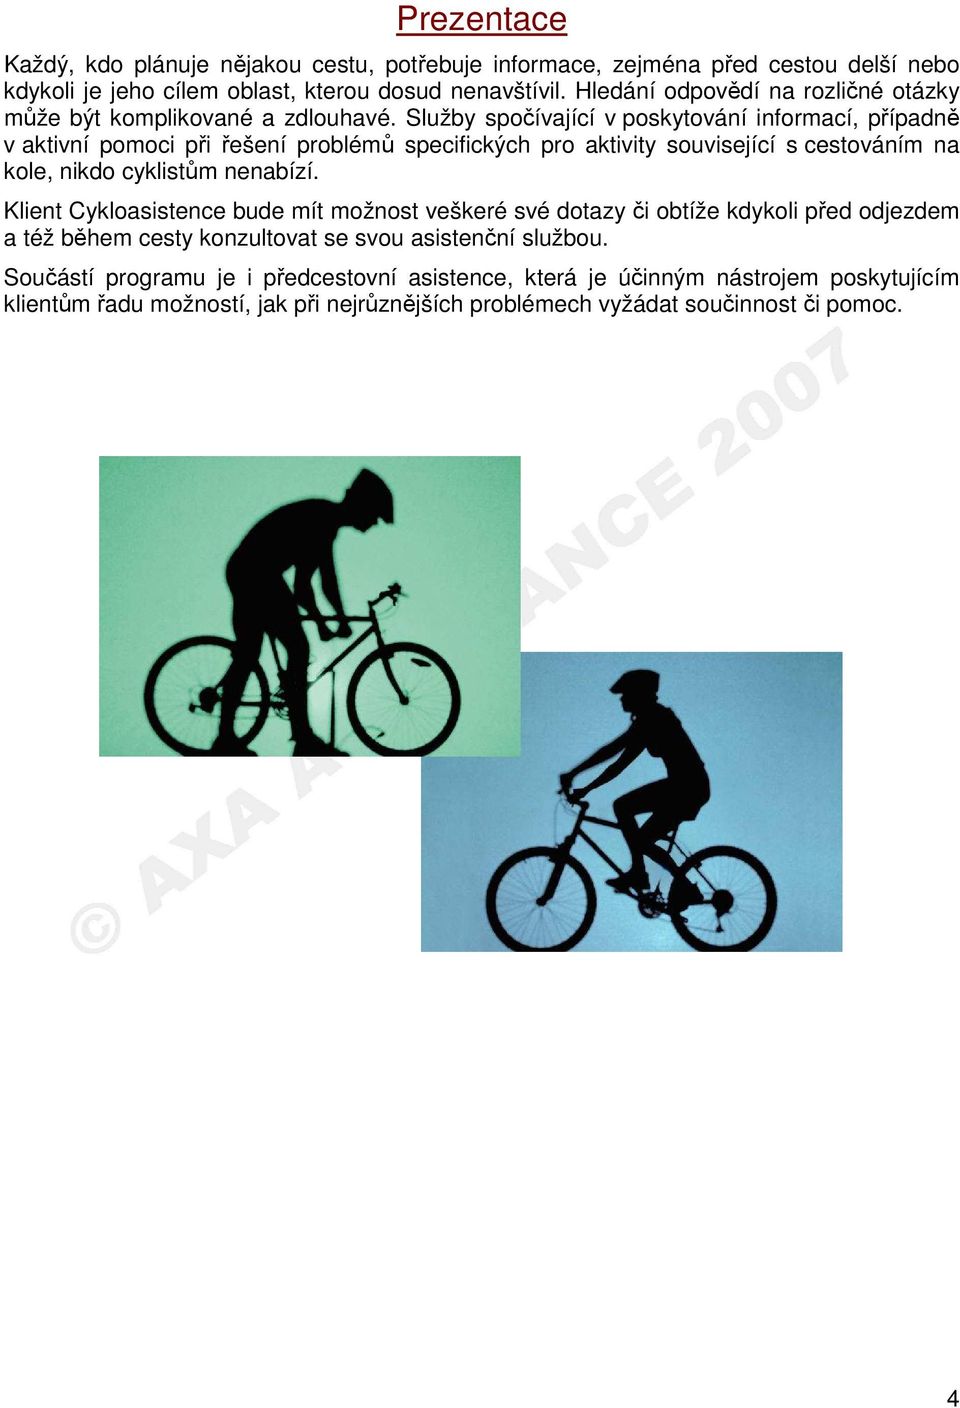 Služby spočívající v poskytování informací, případně v aktivní pomoci při řešení problémů specifických pro aktivity související s cestováním na kole, nikdo cyklistům nenabízí.